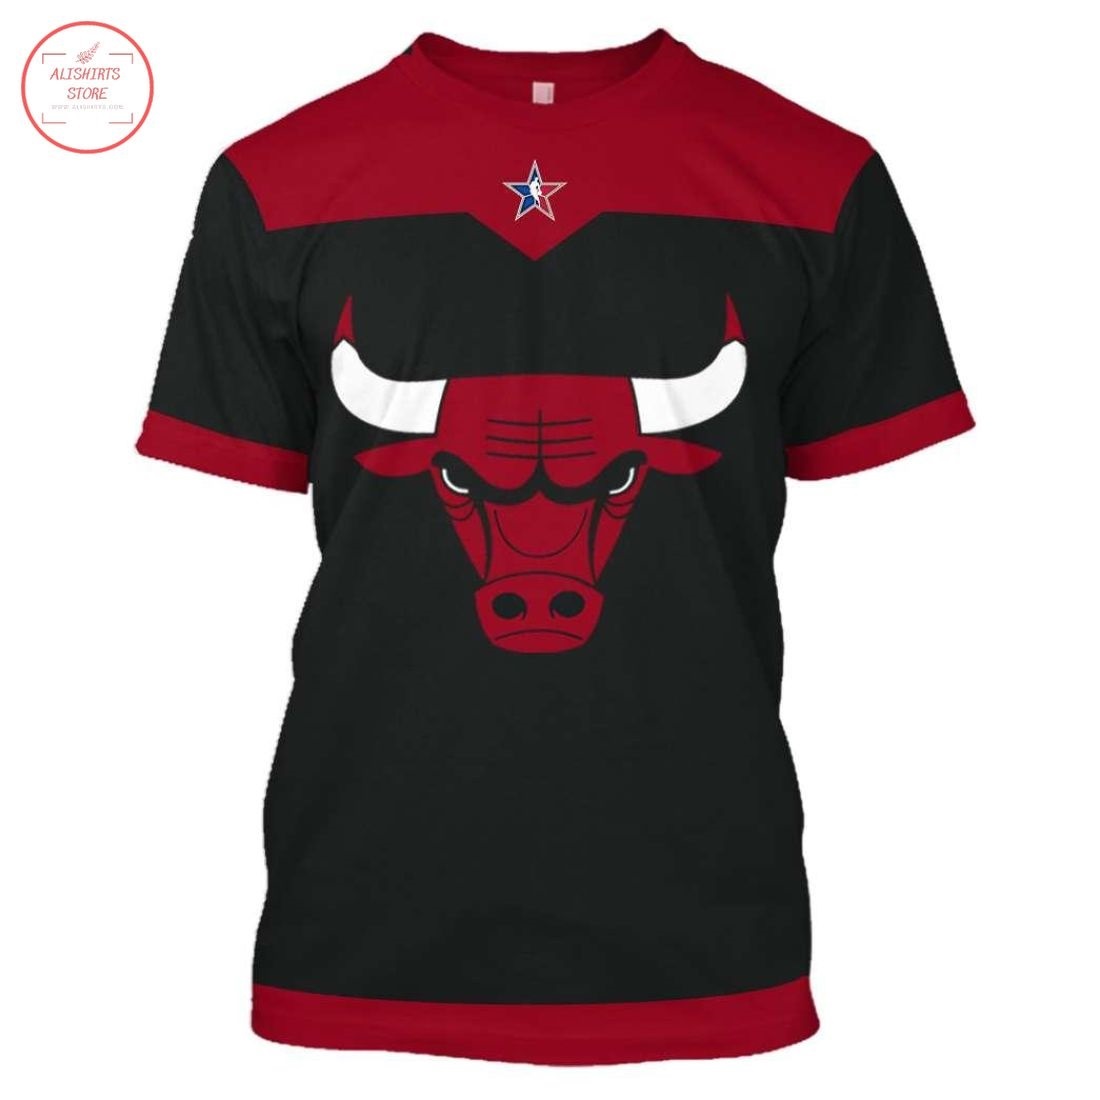 Chicago Bulls NBA Jerseys All Over 3D Print Shirt